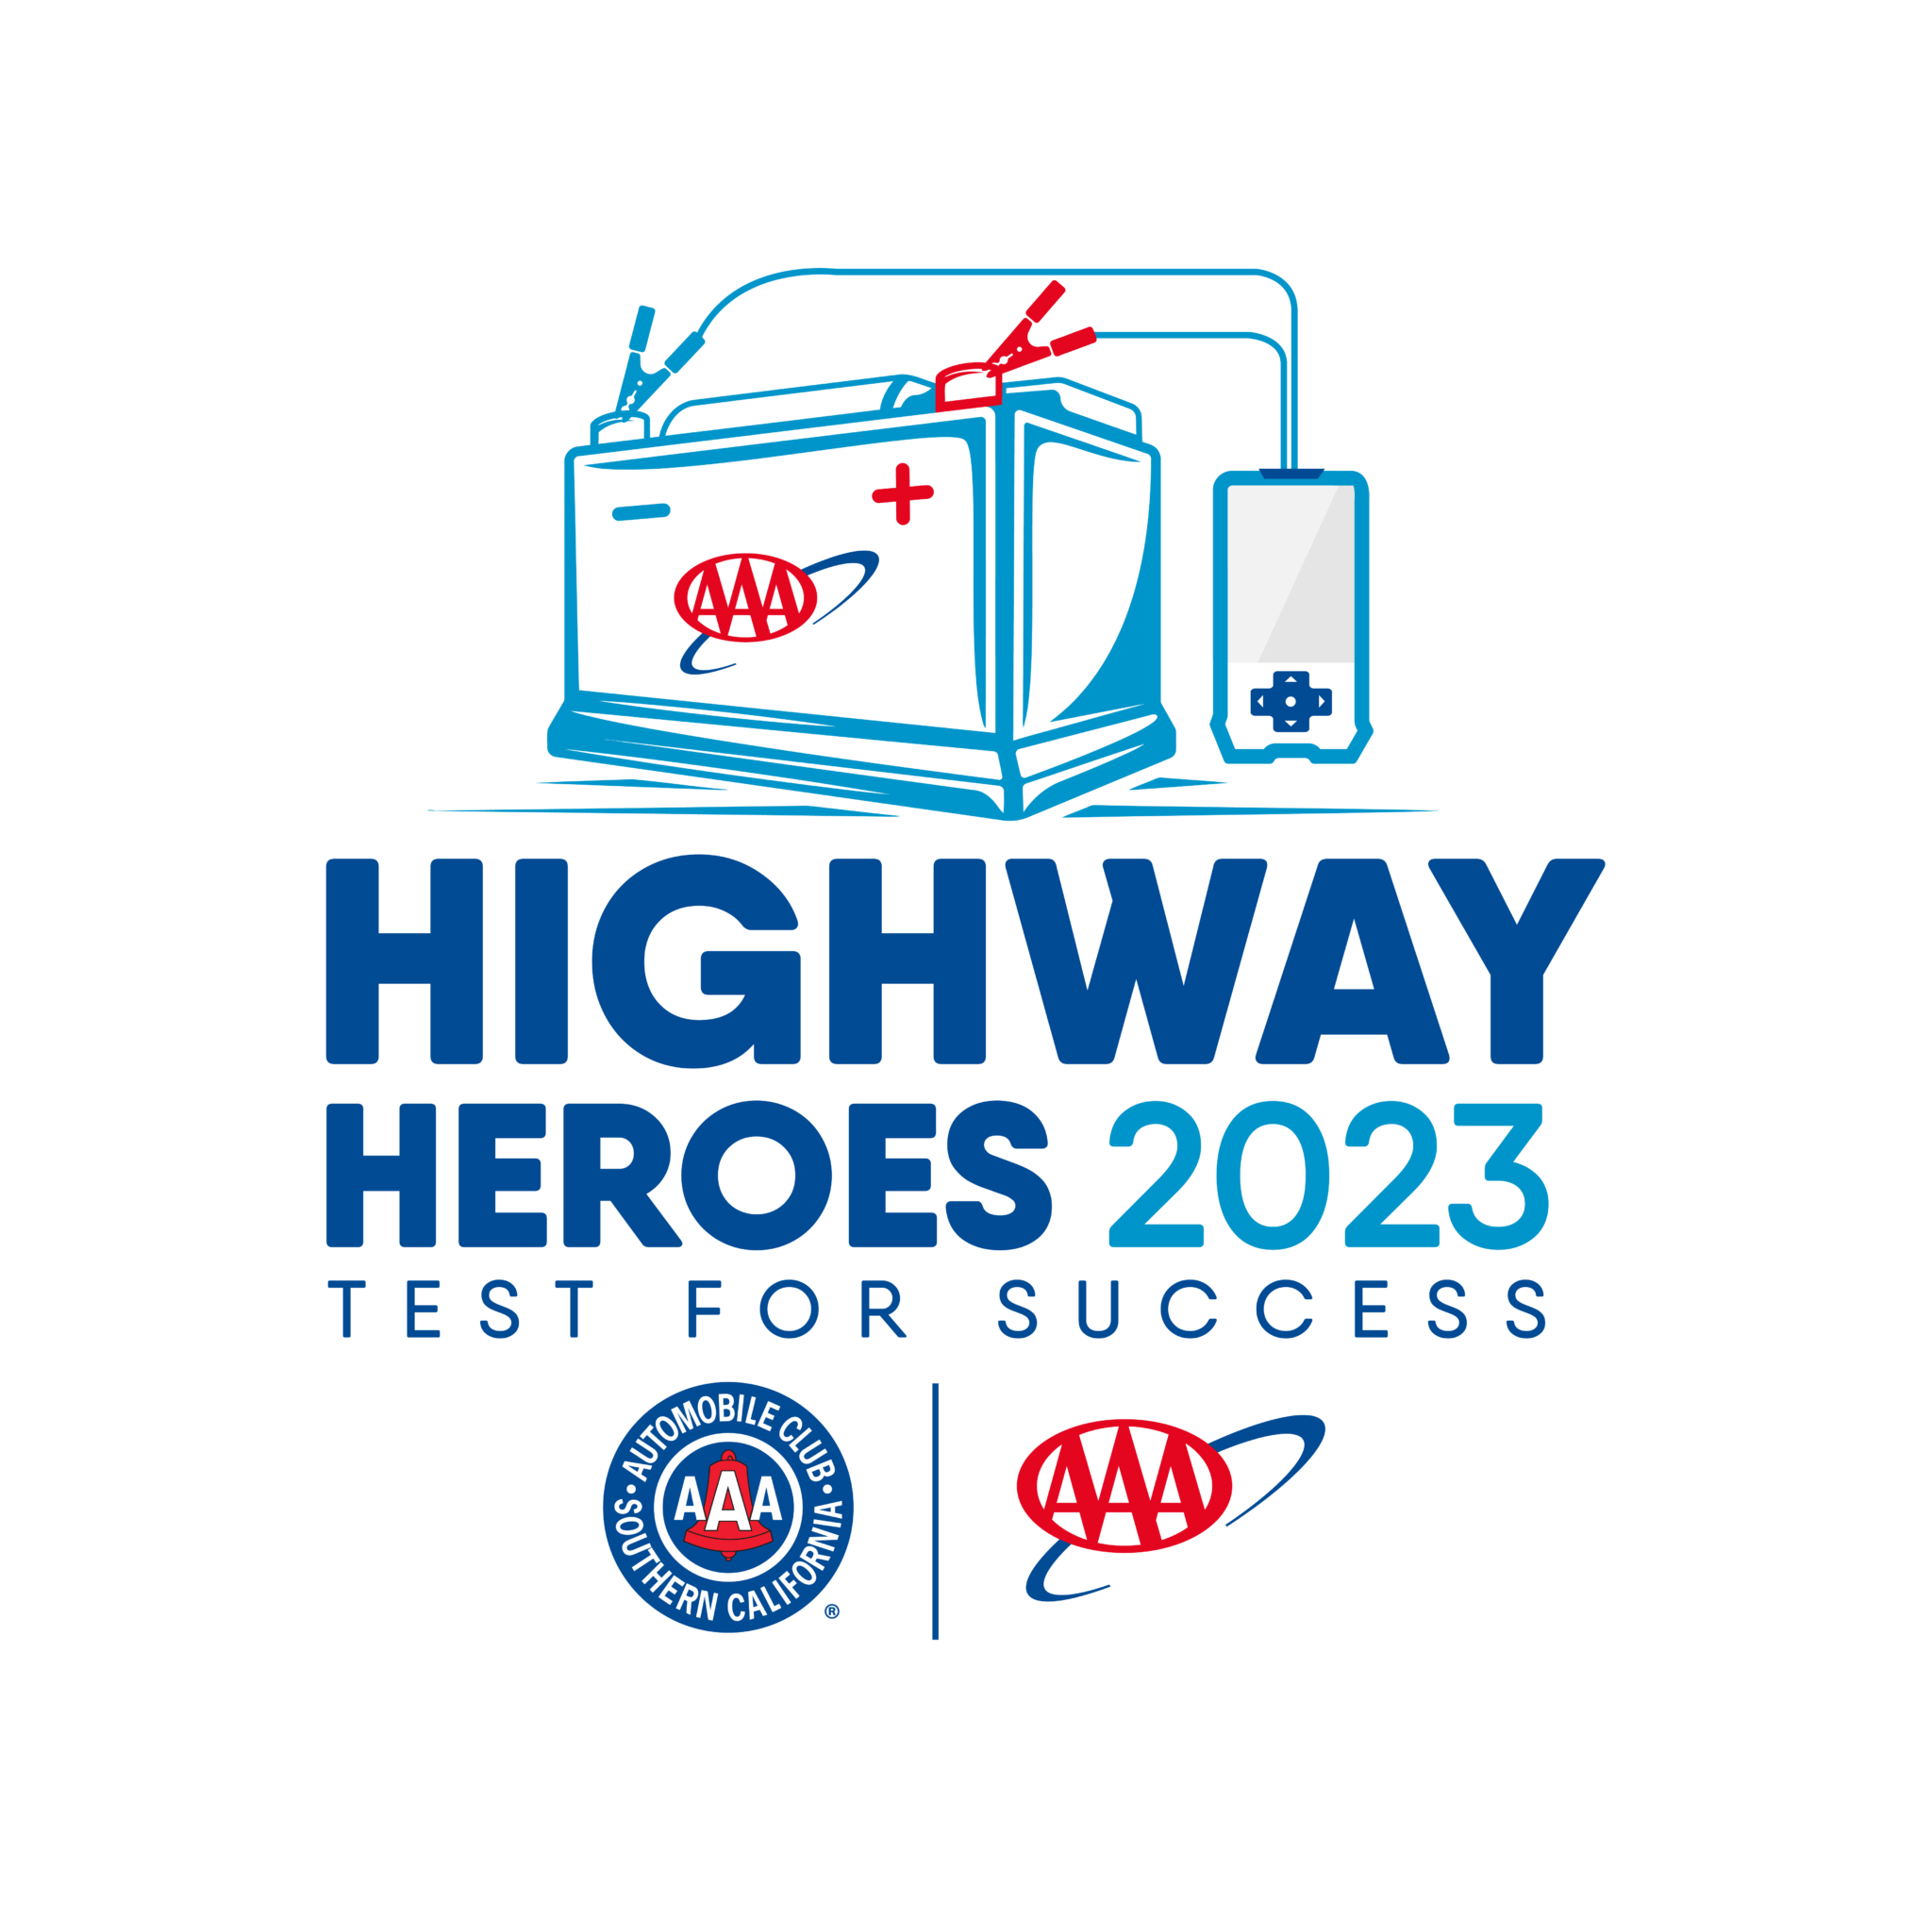 Highway Heroes